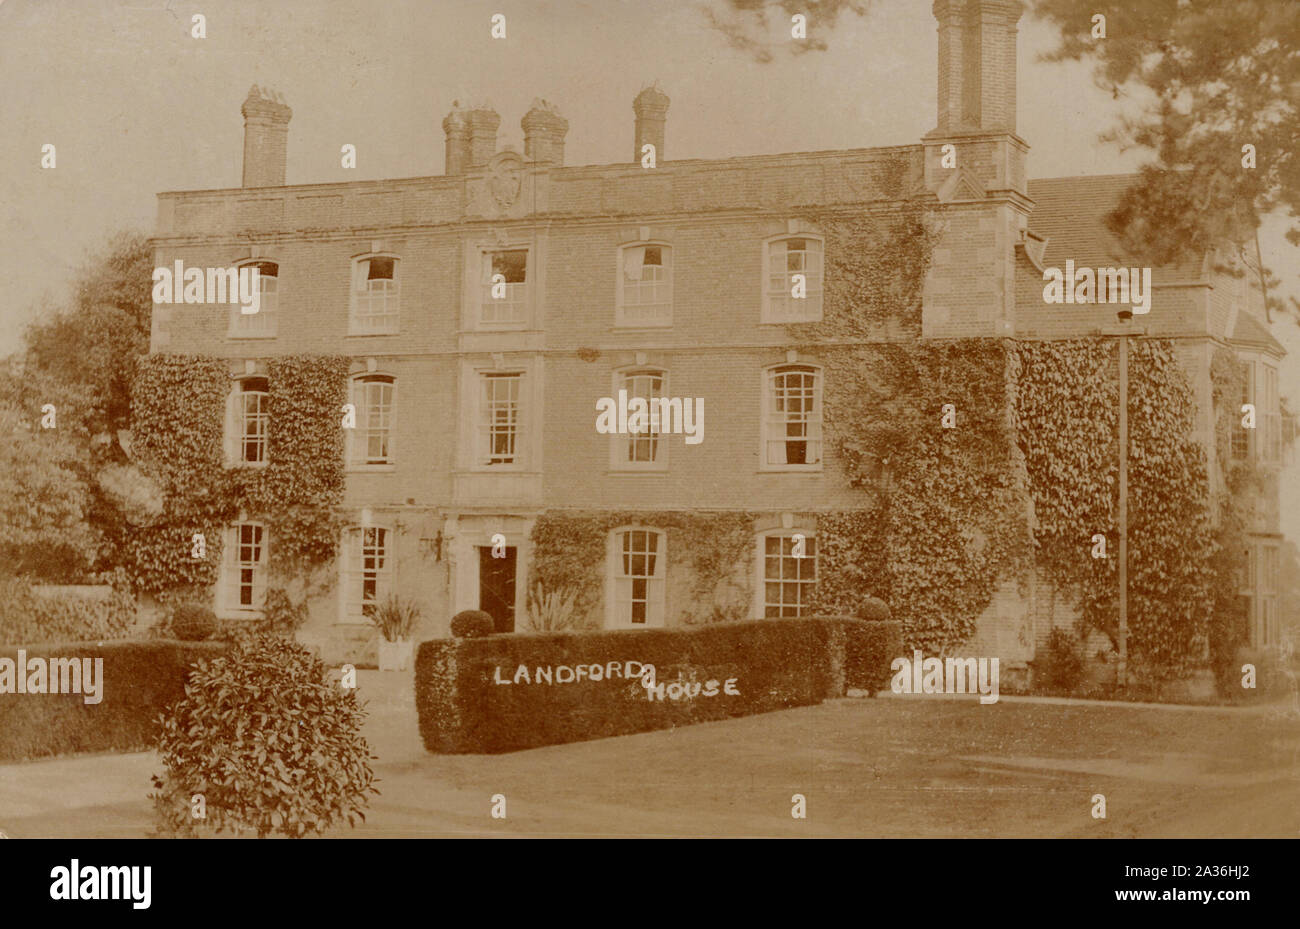 Landford Manor House, dans le Wiltshire en Angleterre, vieille carte postale. Banque D'Images